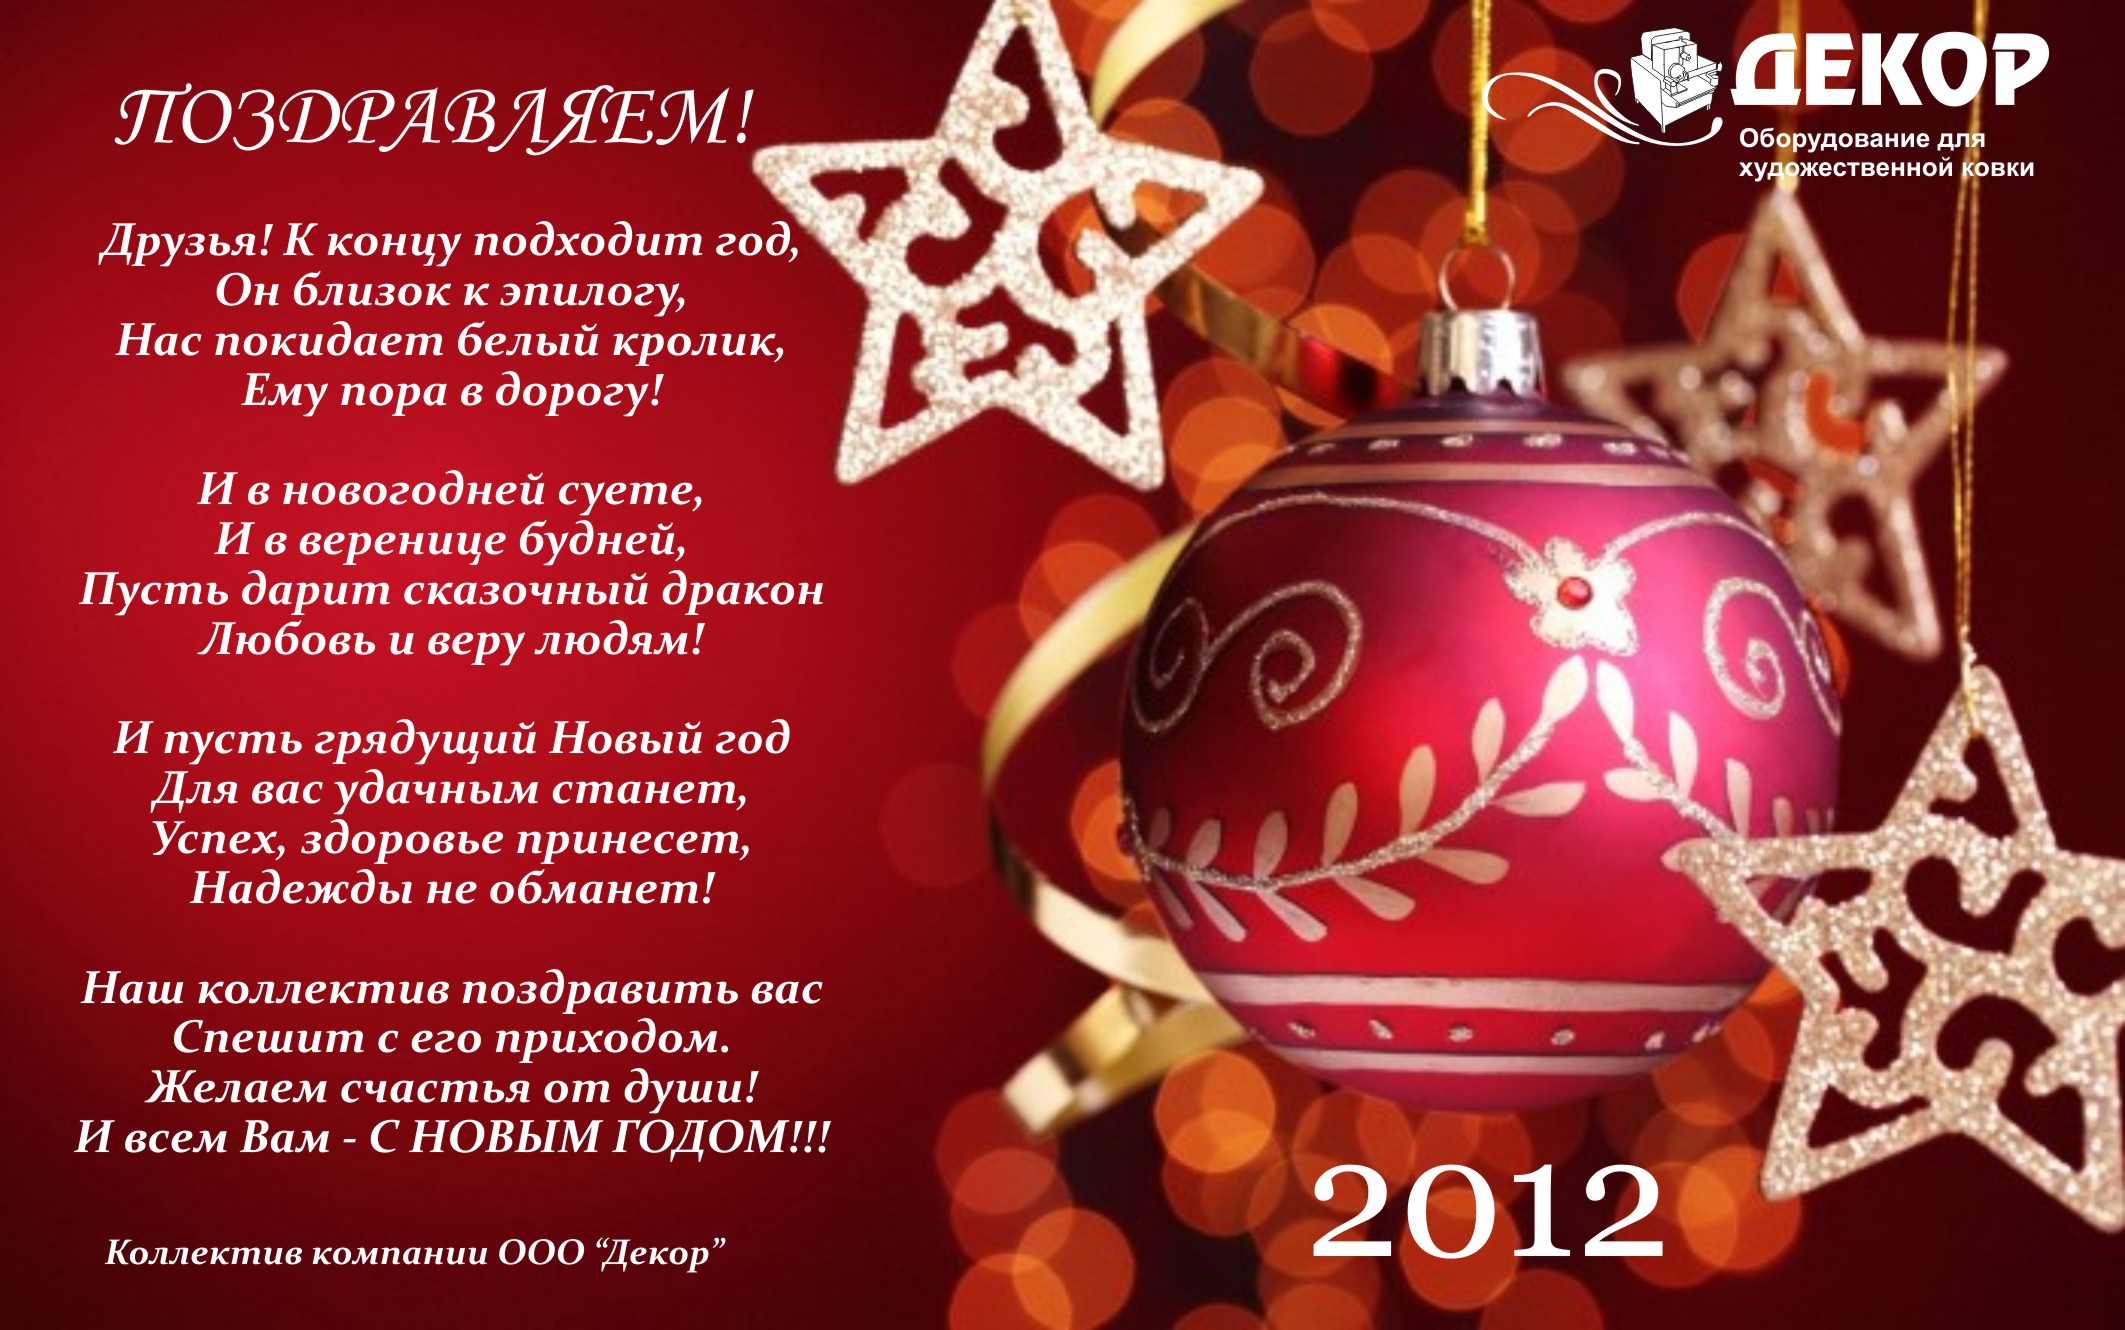 Новогоднее поздравление ООО Декор с 2012 годом